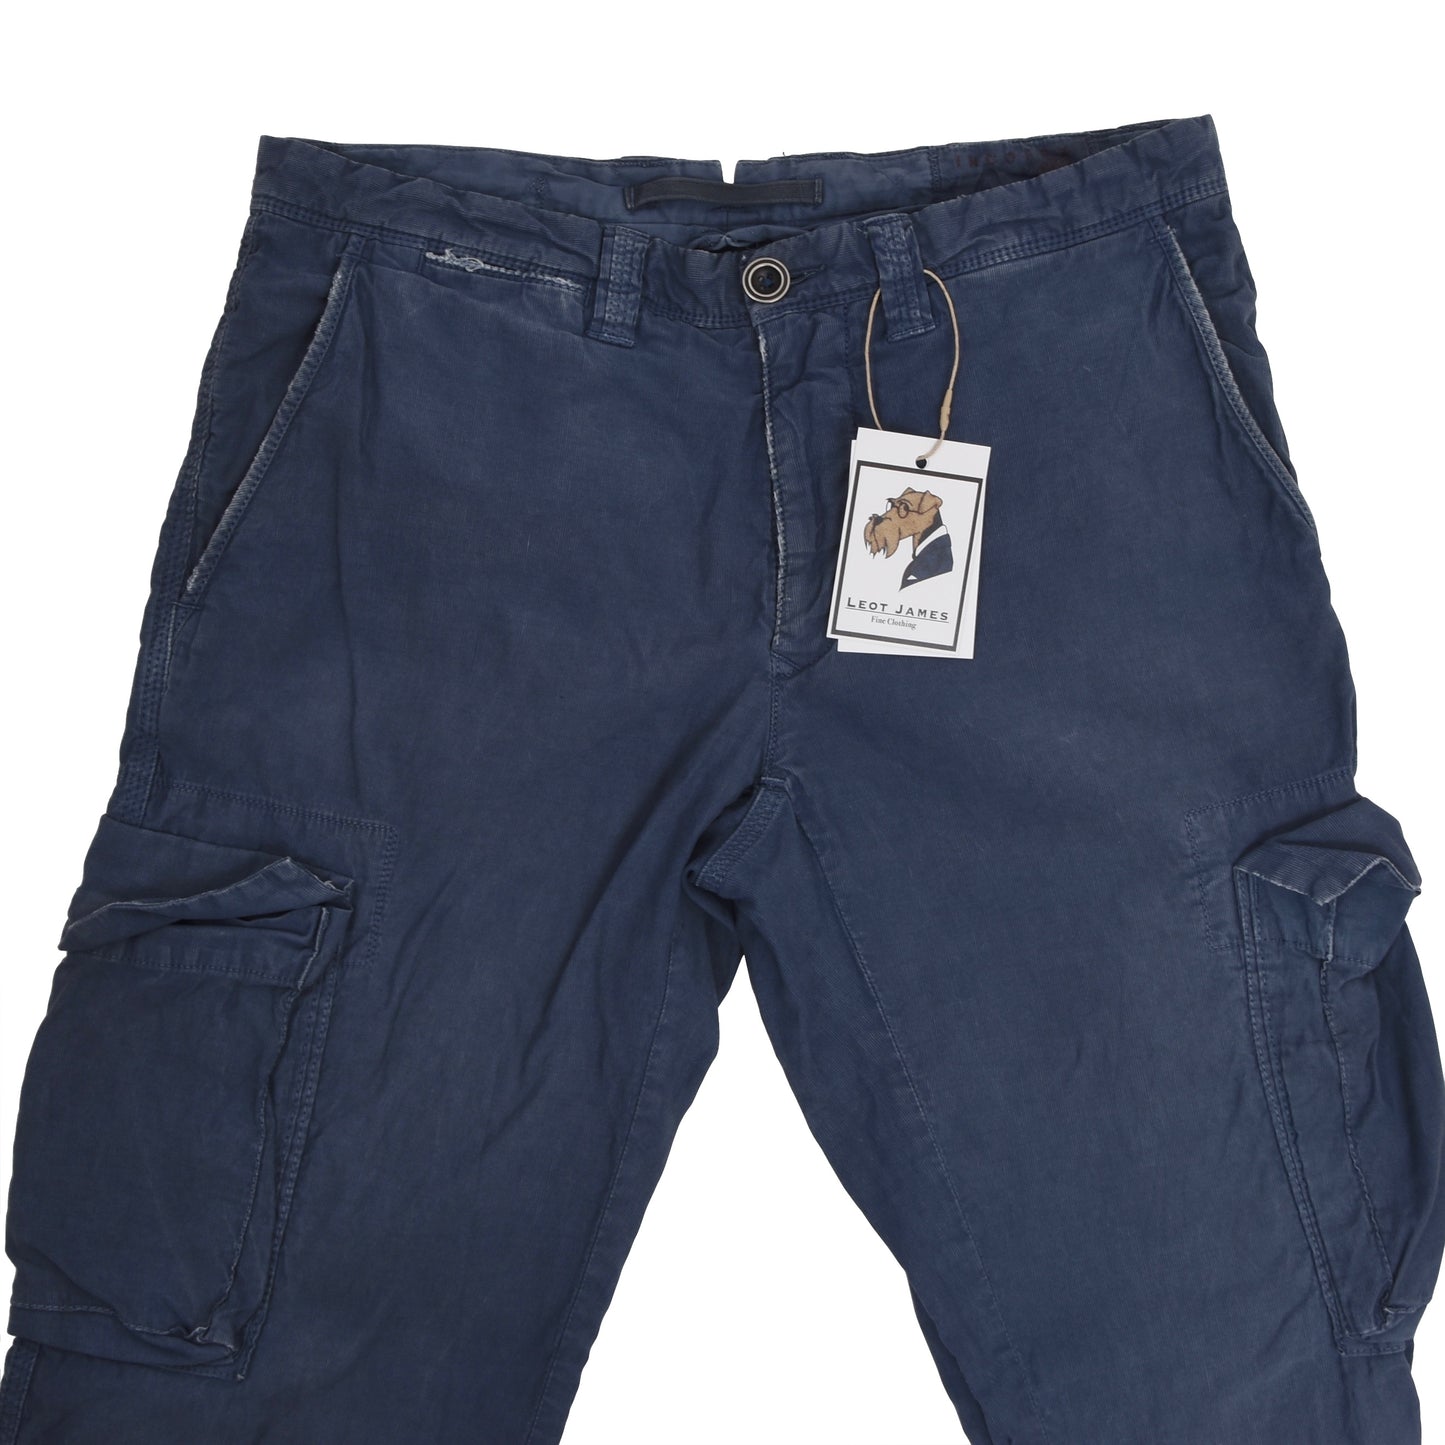 Incotex Cotton/Linen Cargo Pants Size 32 - Blue